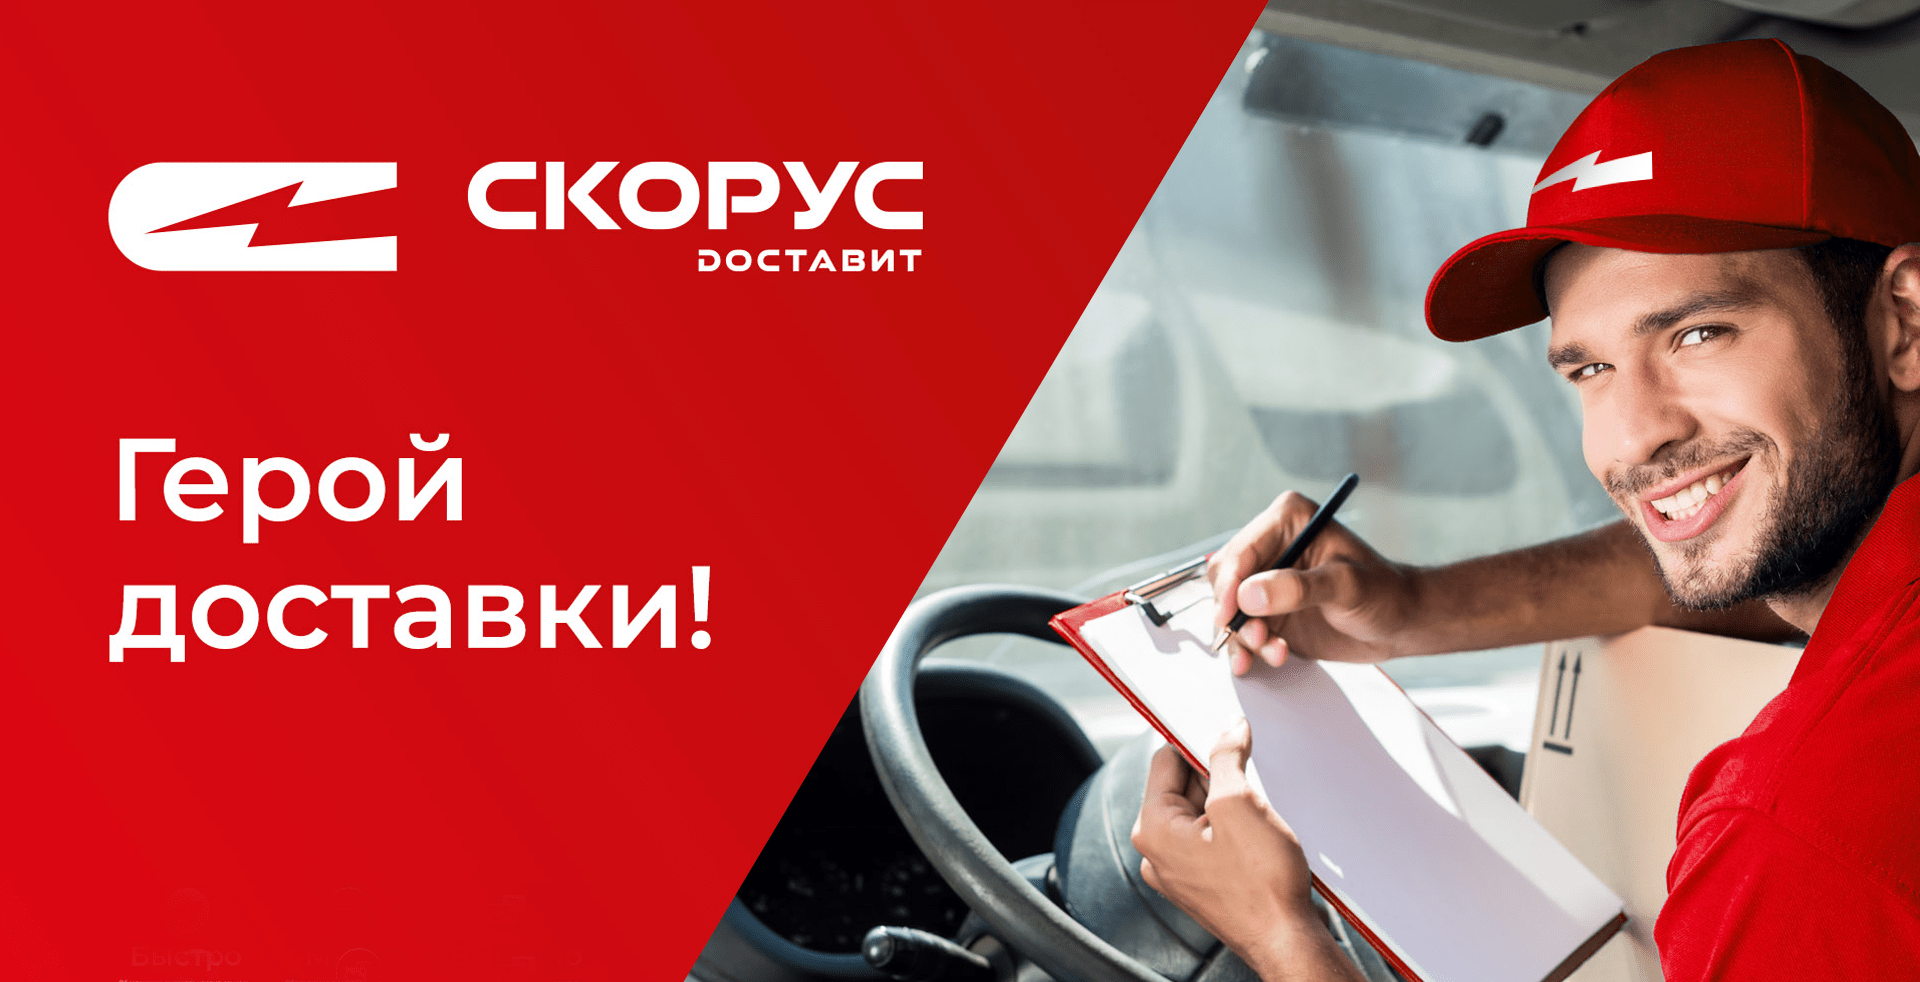 Учитывая, что специализированные B2B маркетплейсы в России еще никто не создавал, СКОРУС стал первым маркетплейсом для бизнеса с быстрой доставкой и качественным сервисом.